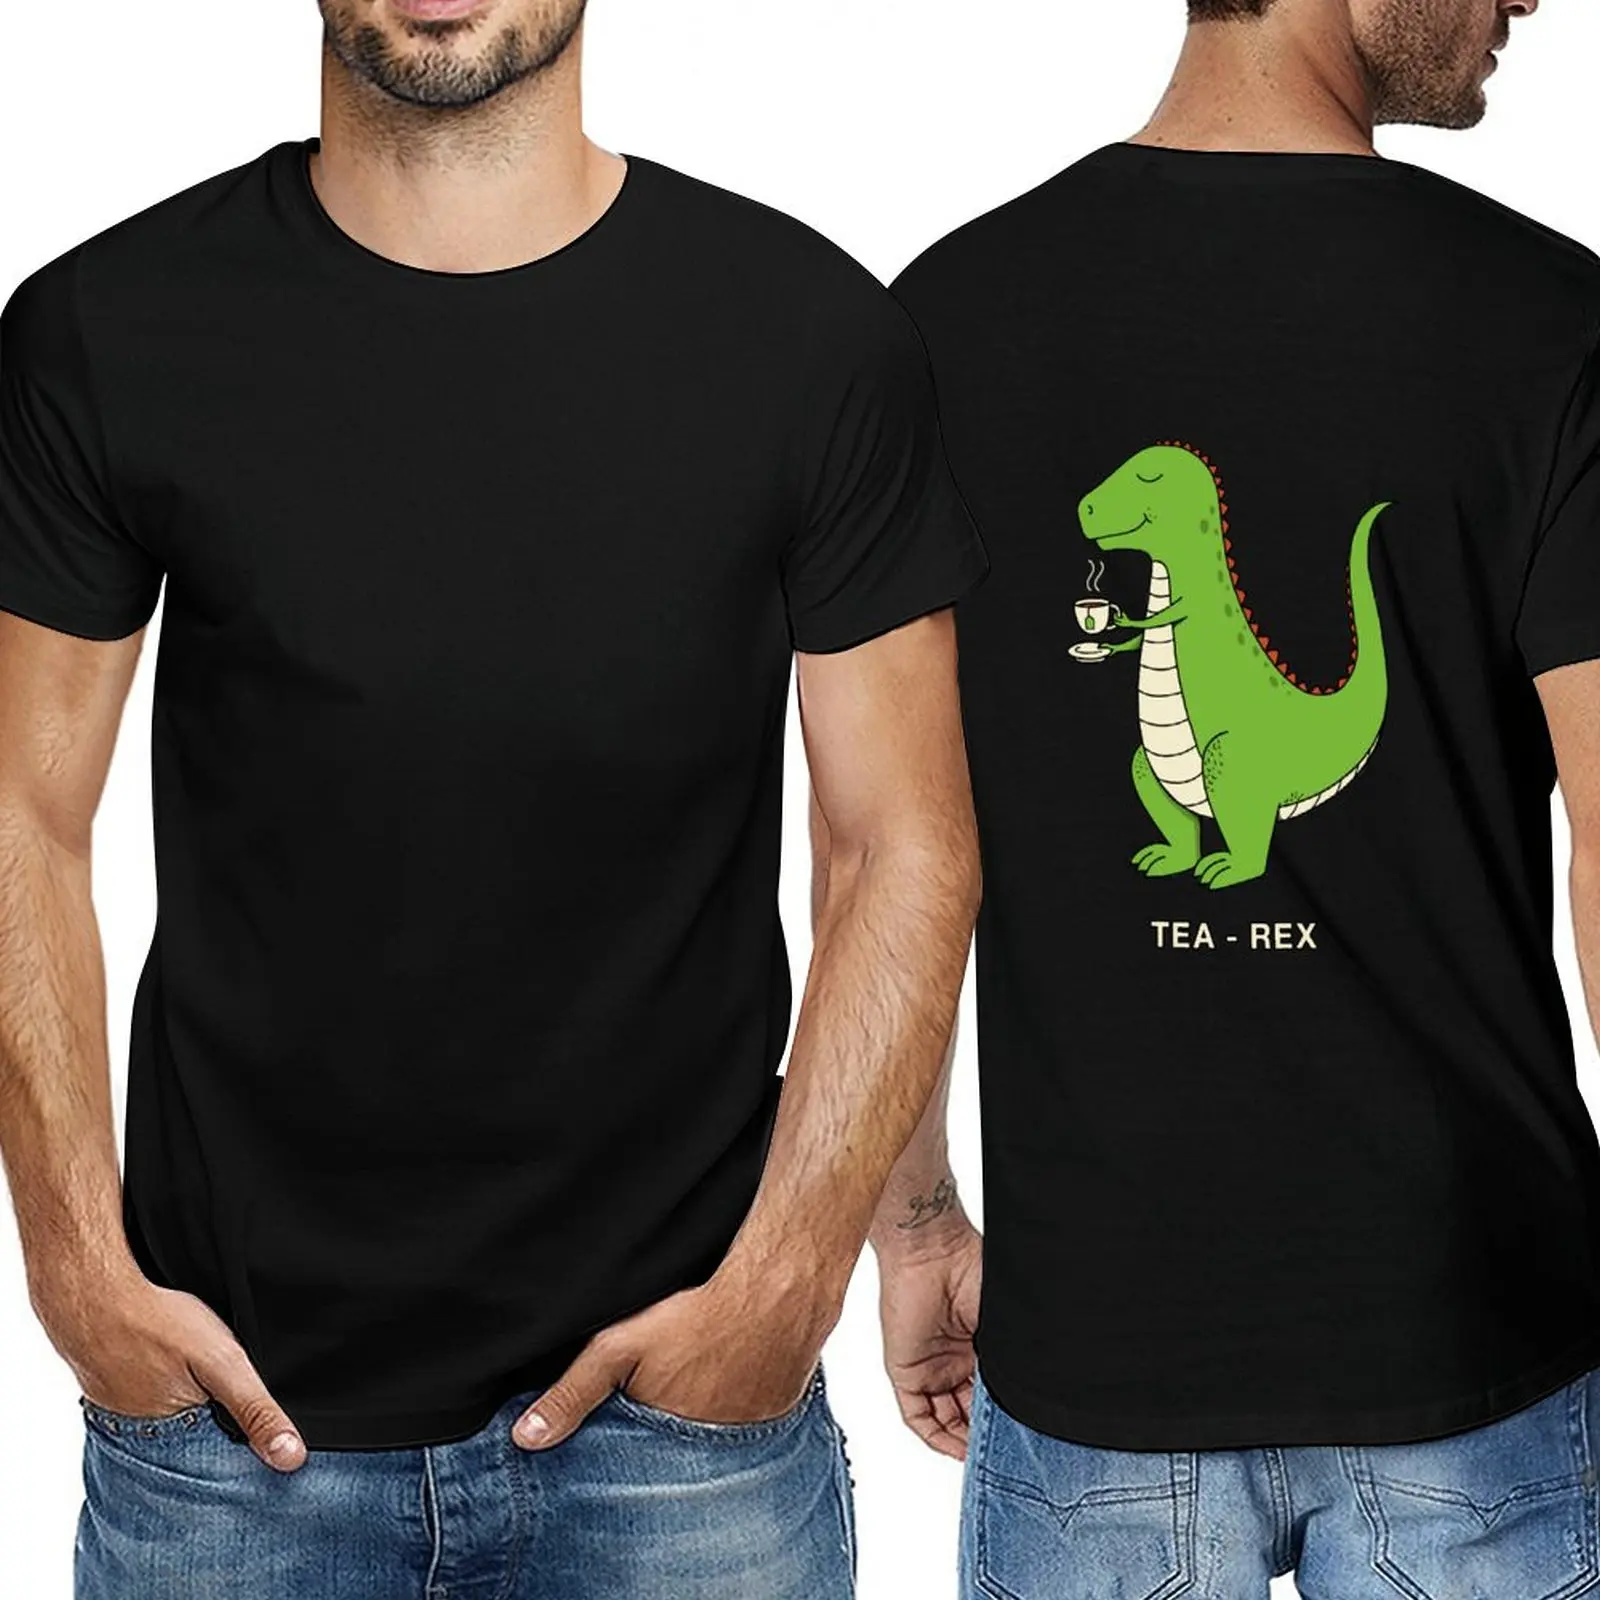 Новая футболка Tea Rex, милая одежда, футболки больших размеров, мужские высокие футболки 1